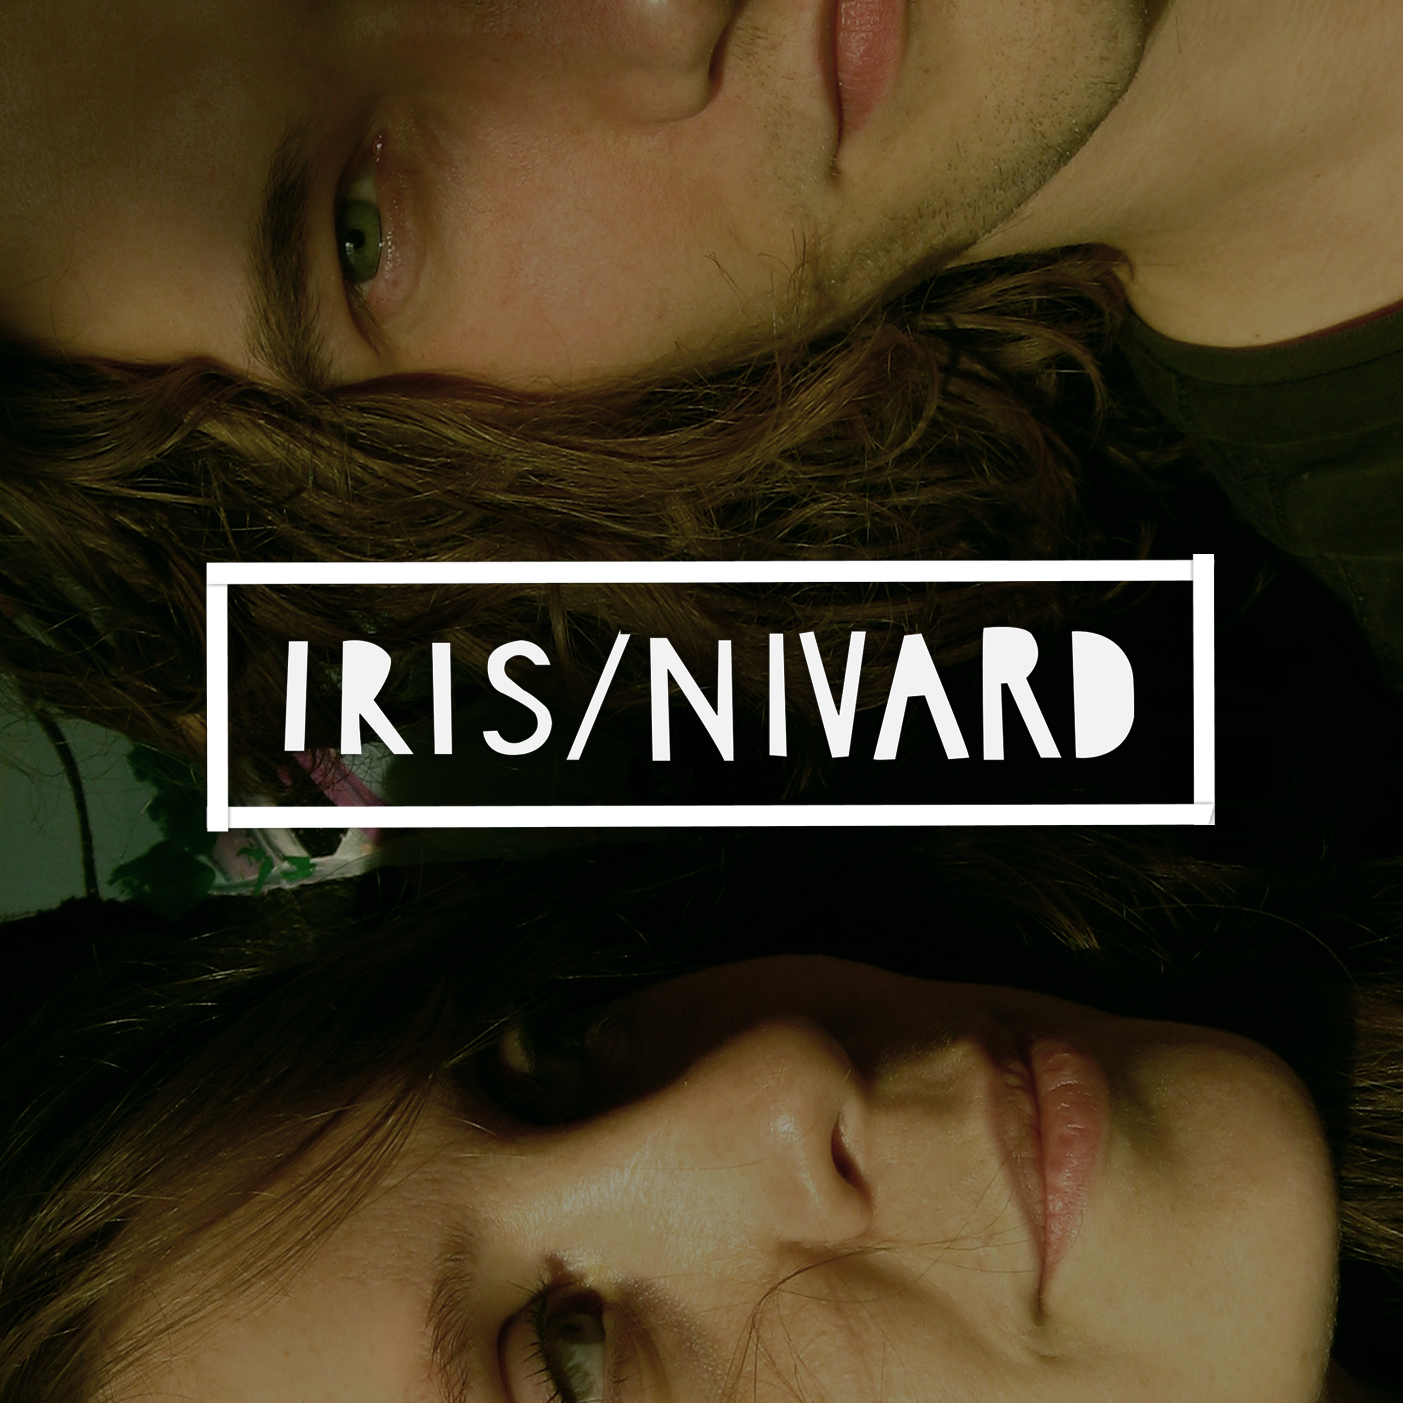 Iris / Nivard